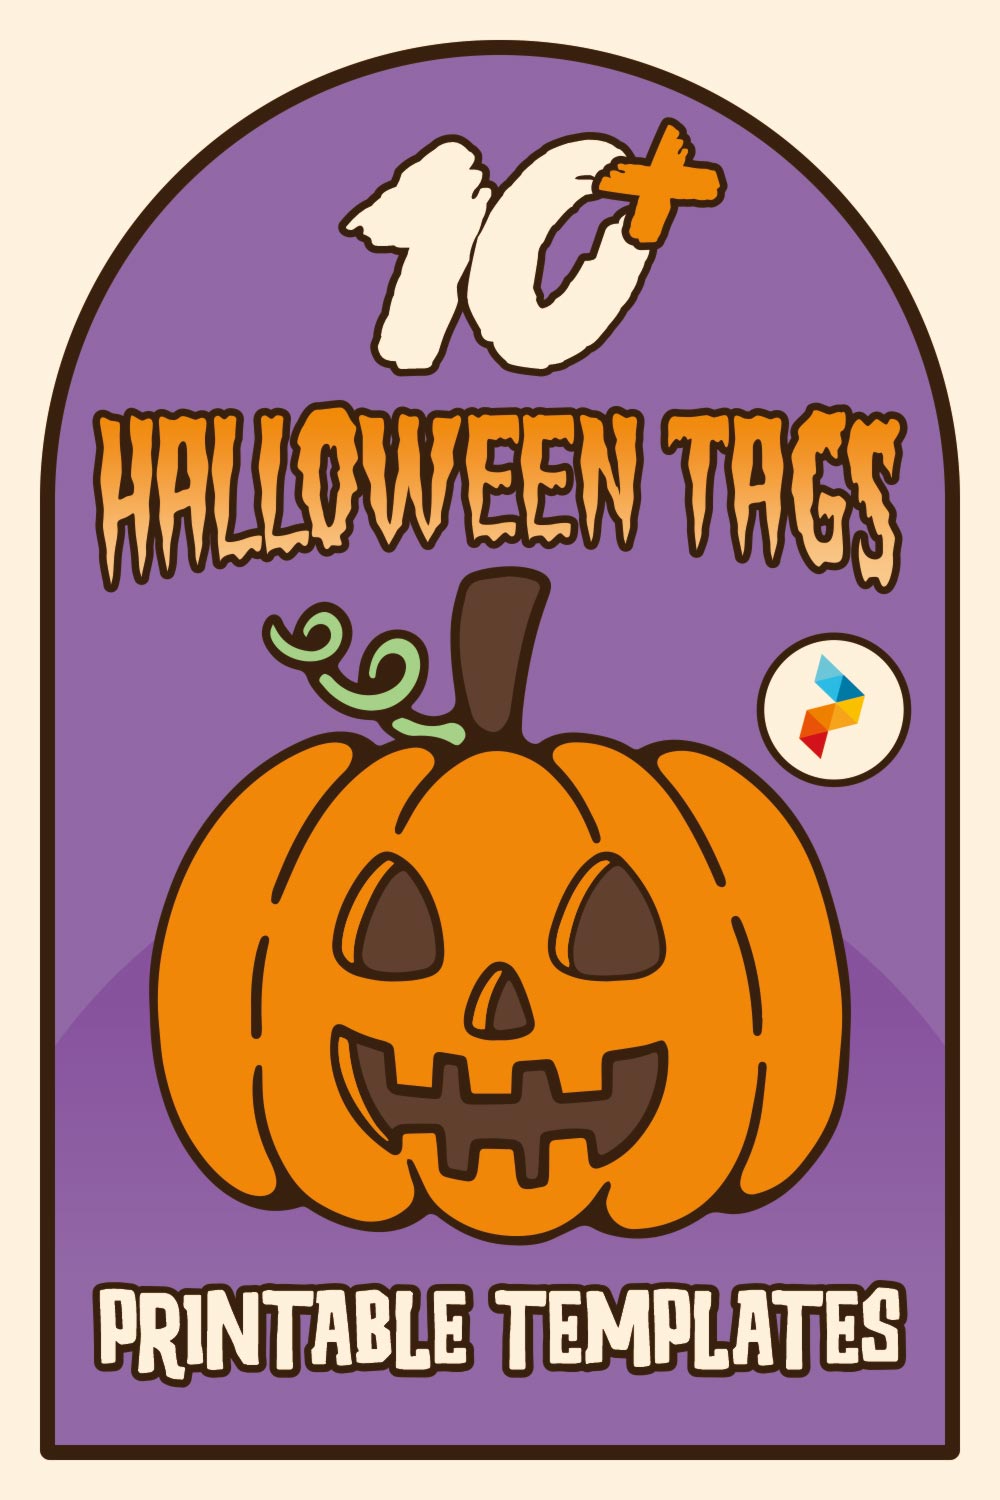 Halloween Tags Printable Templates